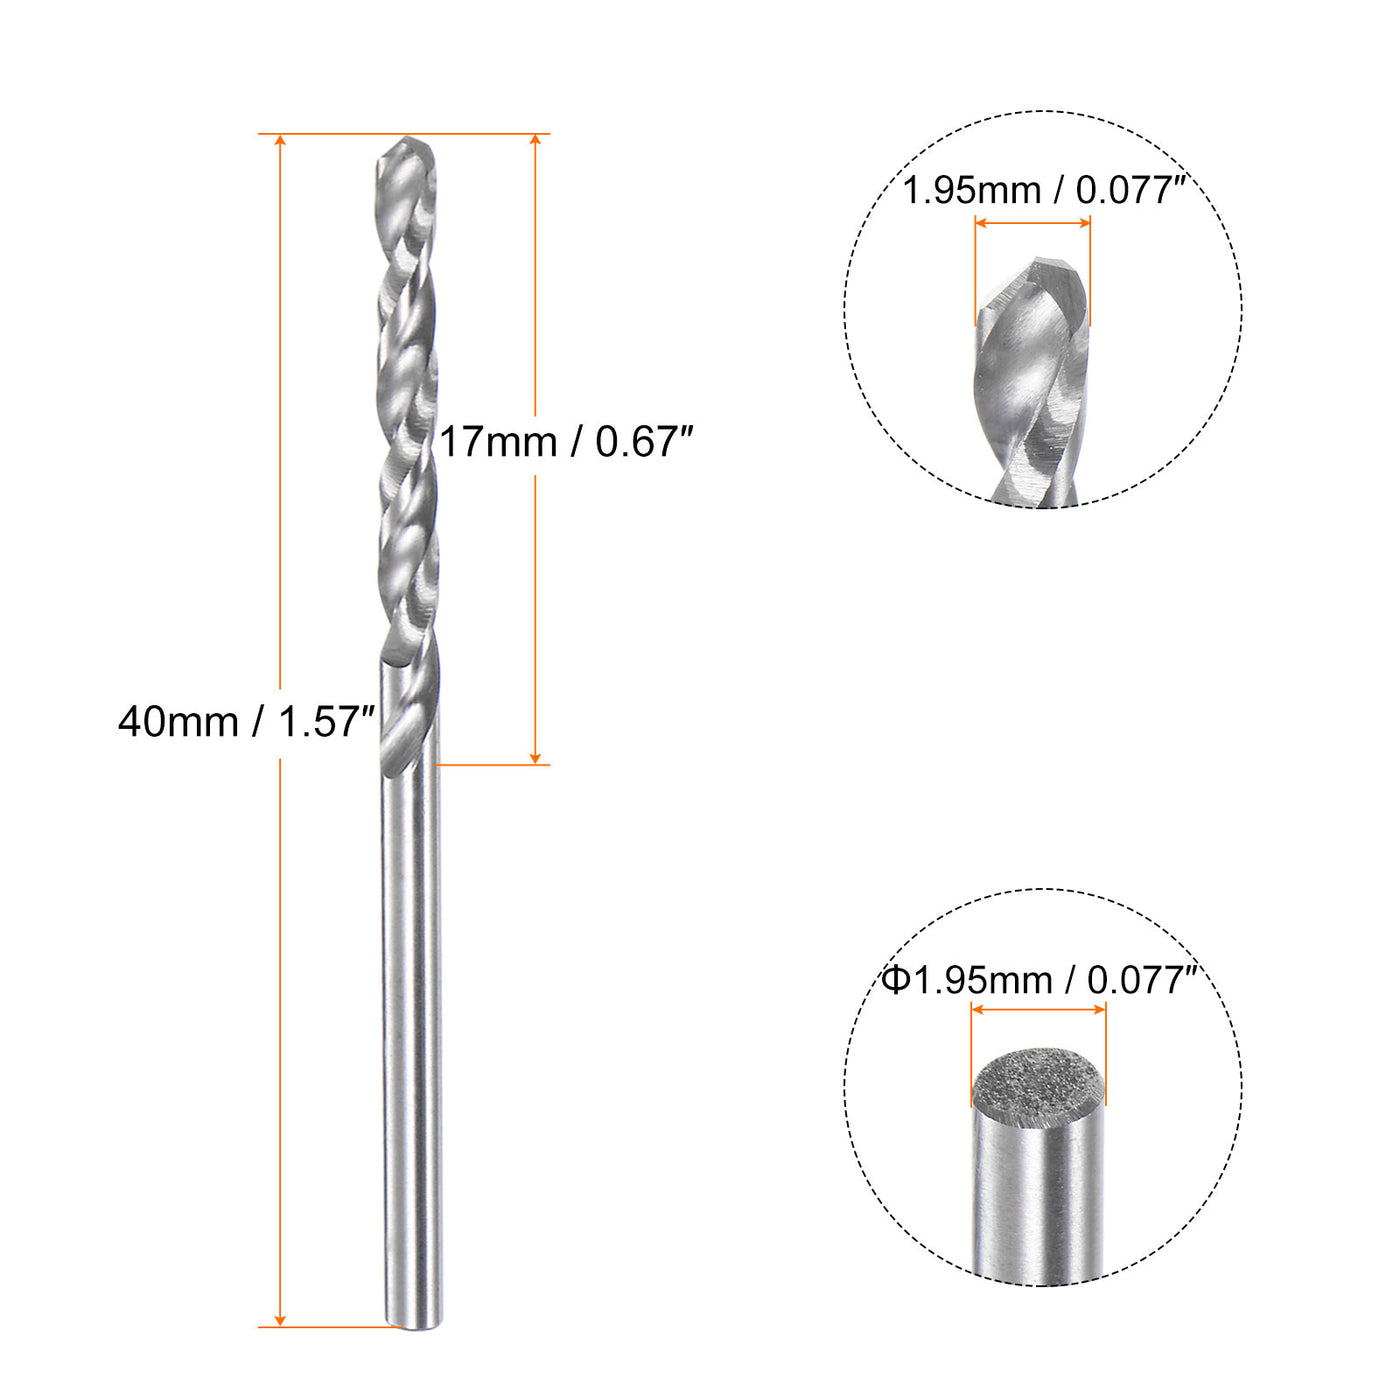 Harfington 1.95mm C3/K10 Tungsten Carbide Precision Straight Shank Twist Drill Bit